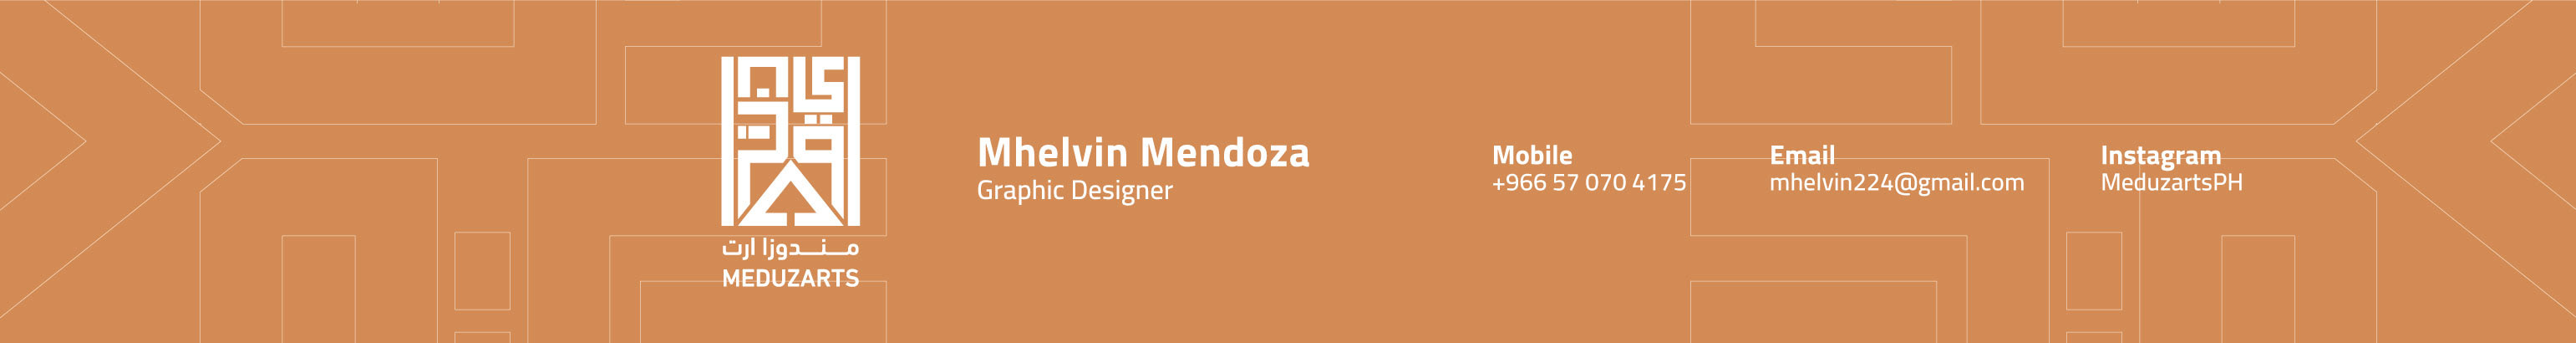 Bannière de profil de Mhelvin Mendoza